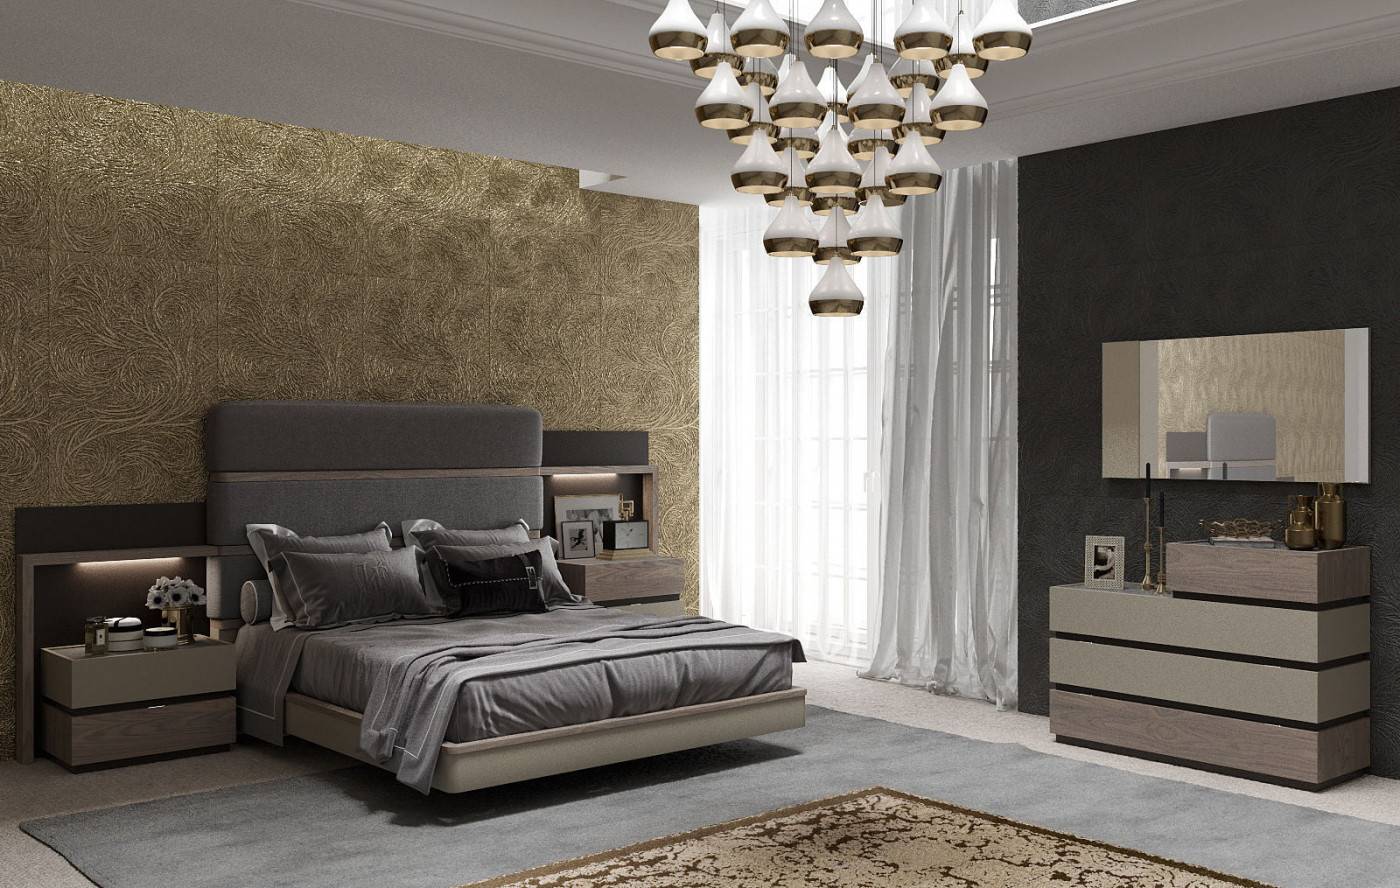 Кровати с тумбочками: спальные места с прикроватными тумбами сбоку, цельная мебель, совмещенные варианты, изделия на ламелях